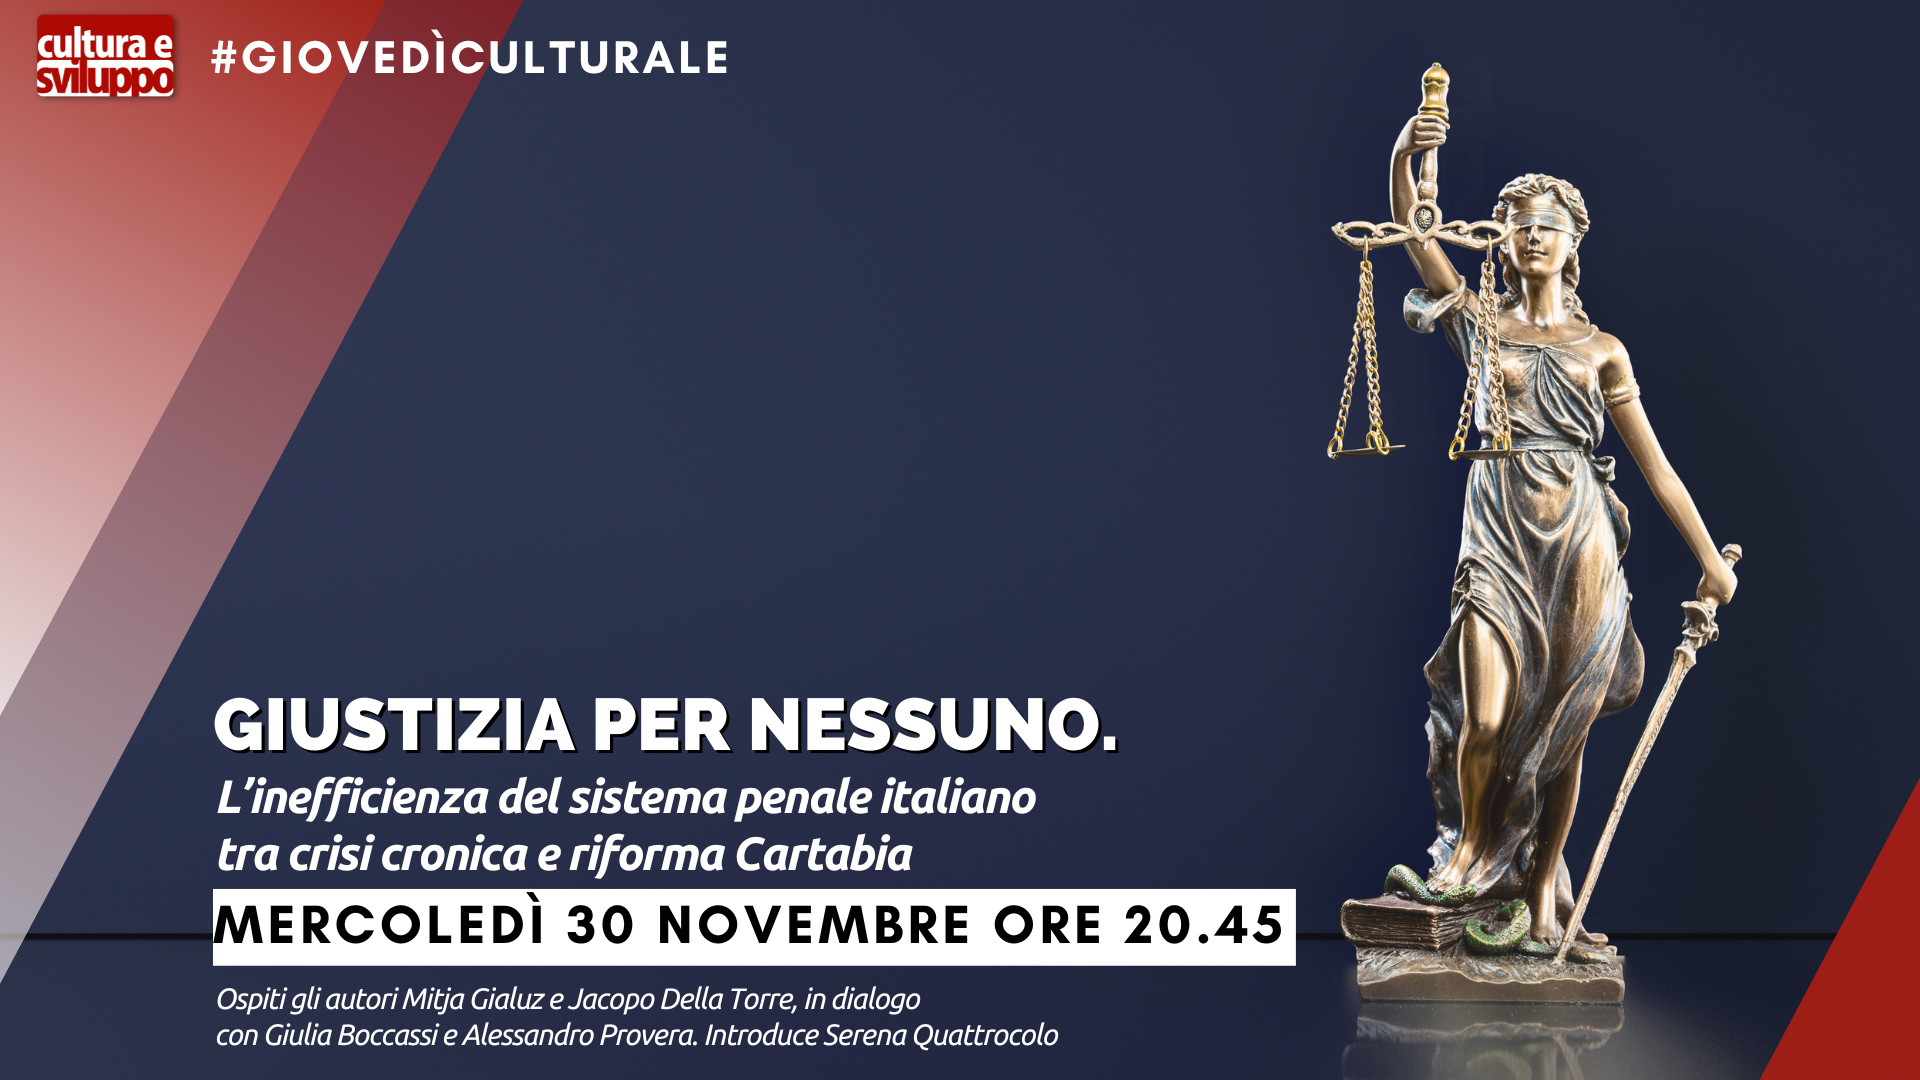 Giustizia per nessuno. L’inefficienza del sistema penale italiano tra crisi cronica e riforma Cartabia